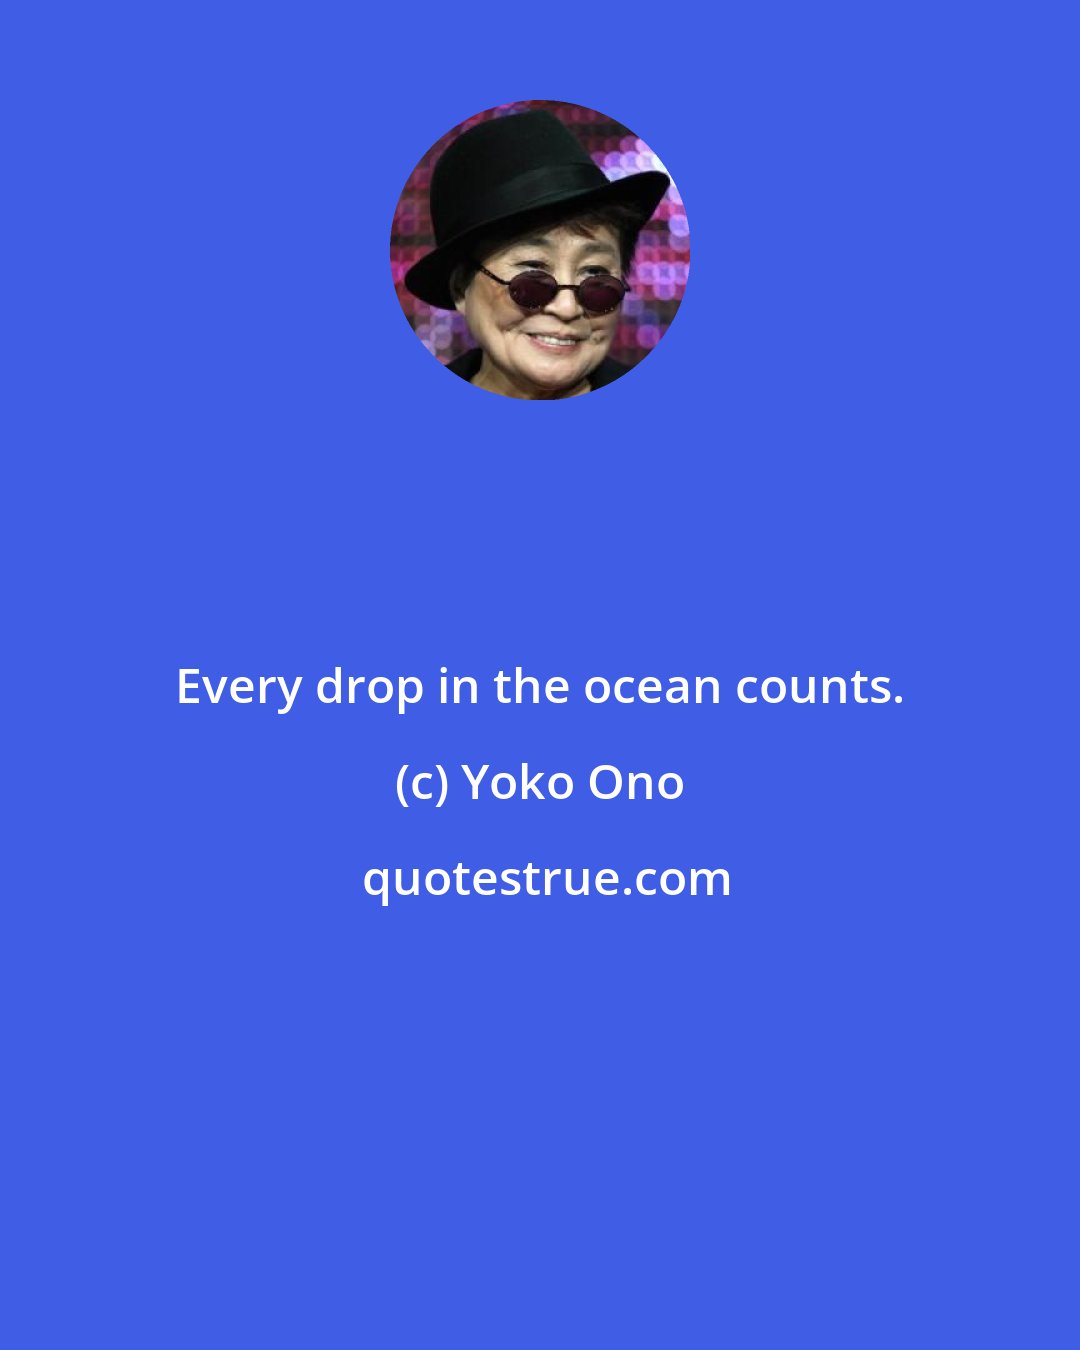 Yoko Ono: Every drop in the ocean counts.